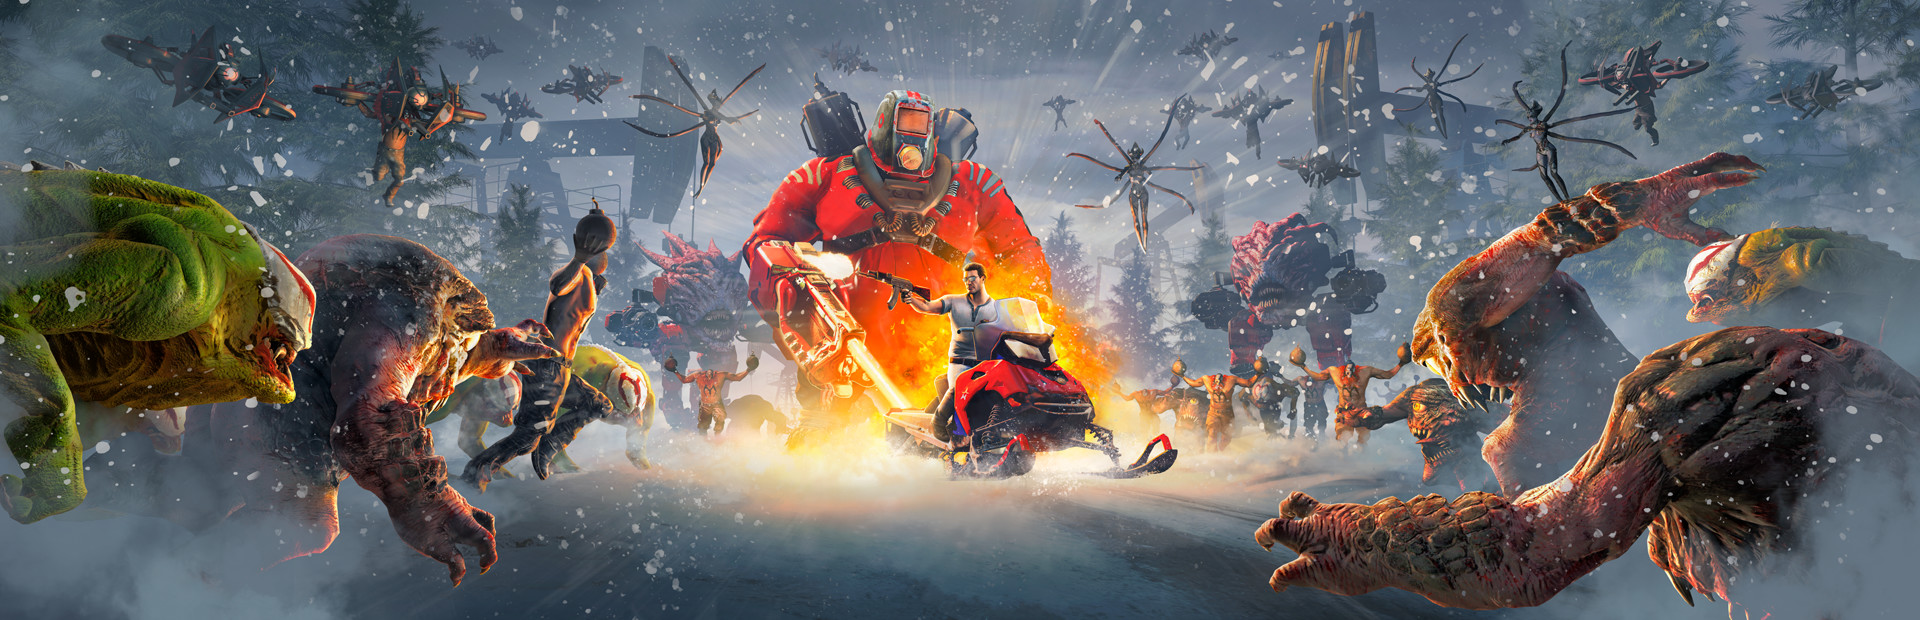 Serious Sam: Siberian Mayhem cover image